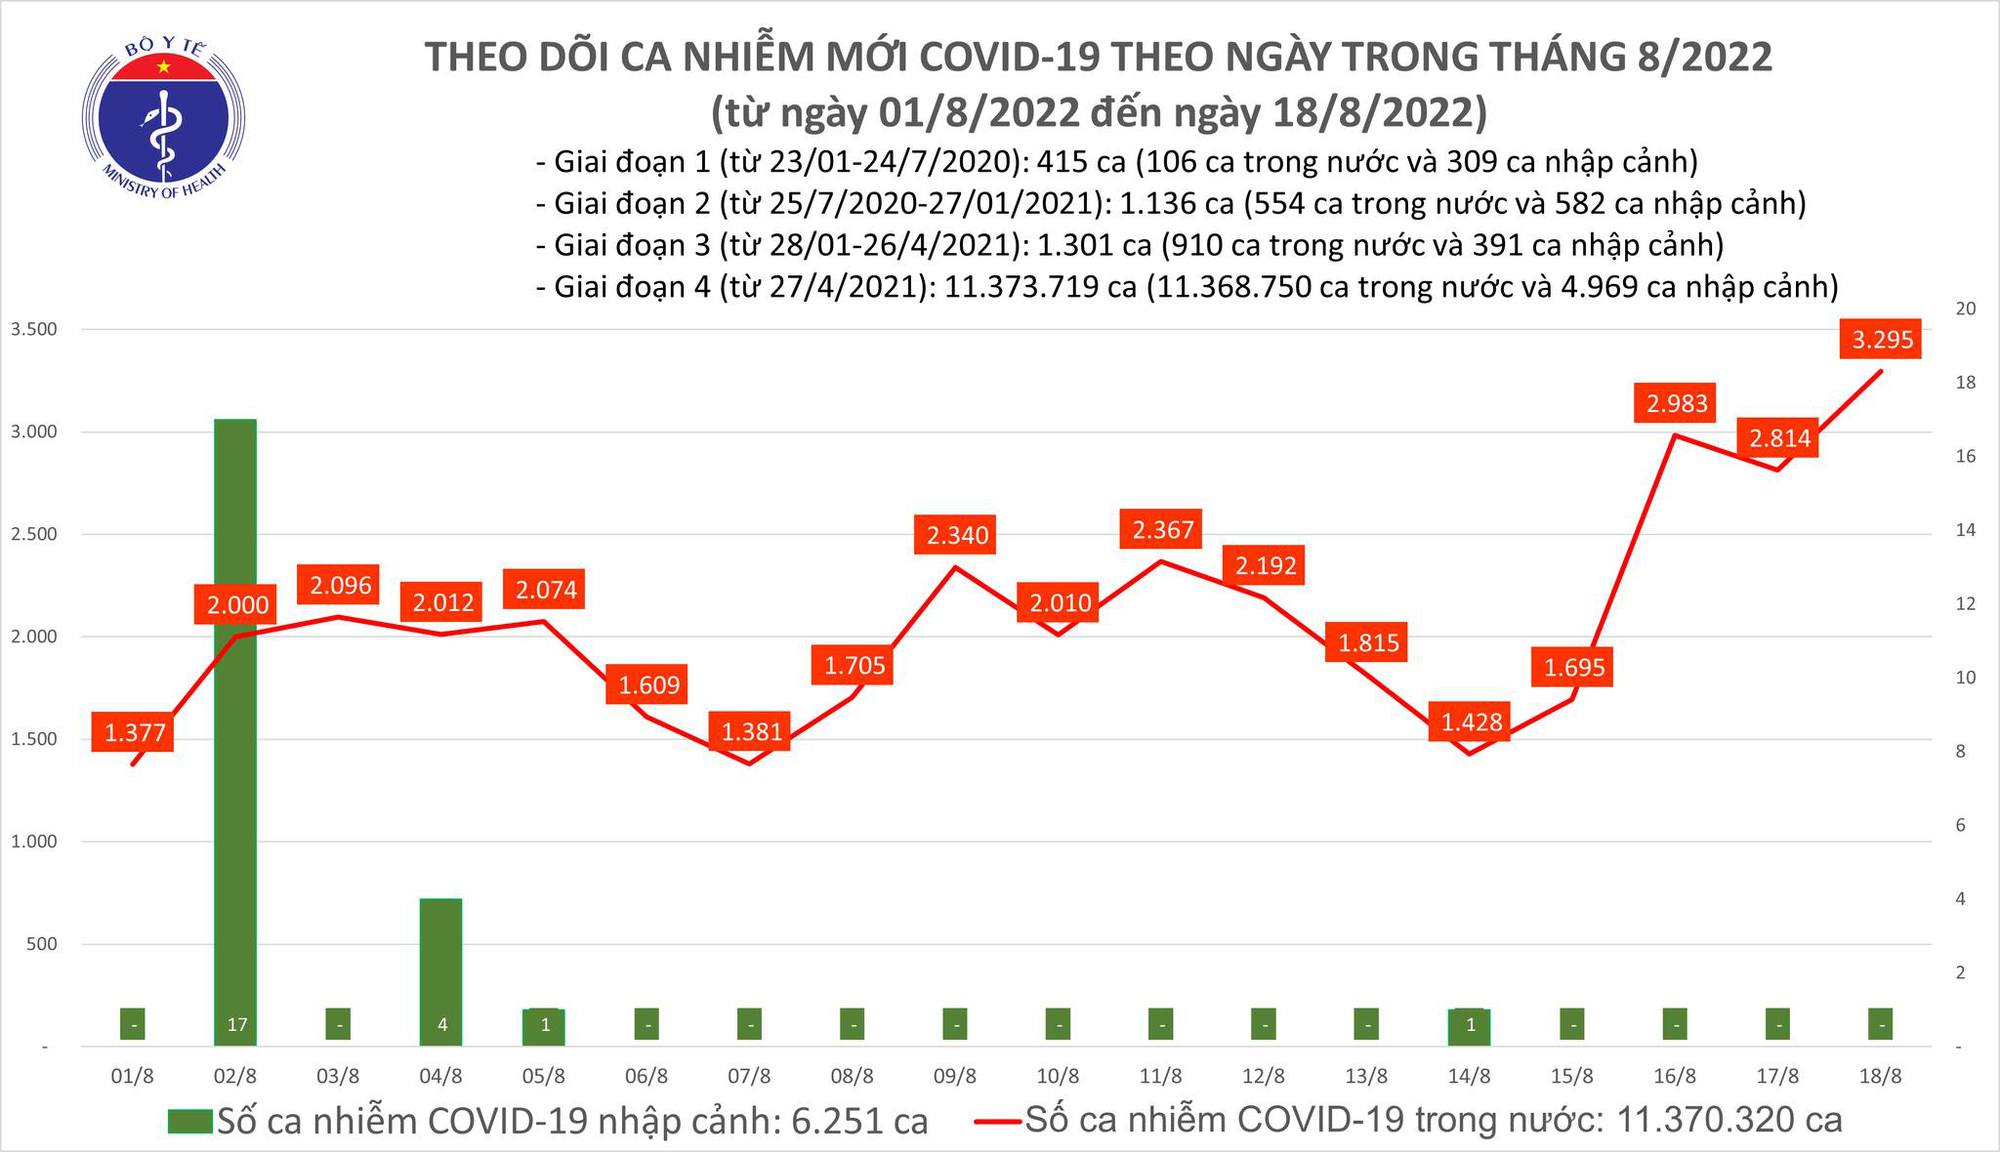 Dịch Covid-19 hôm nay: Số mắc tăng vọt lên 3.295 ca, cao nhất trong hơn 3 tháng qua - Ảnh 1.